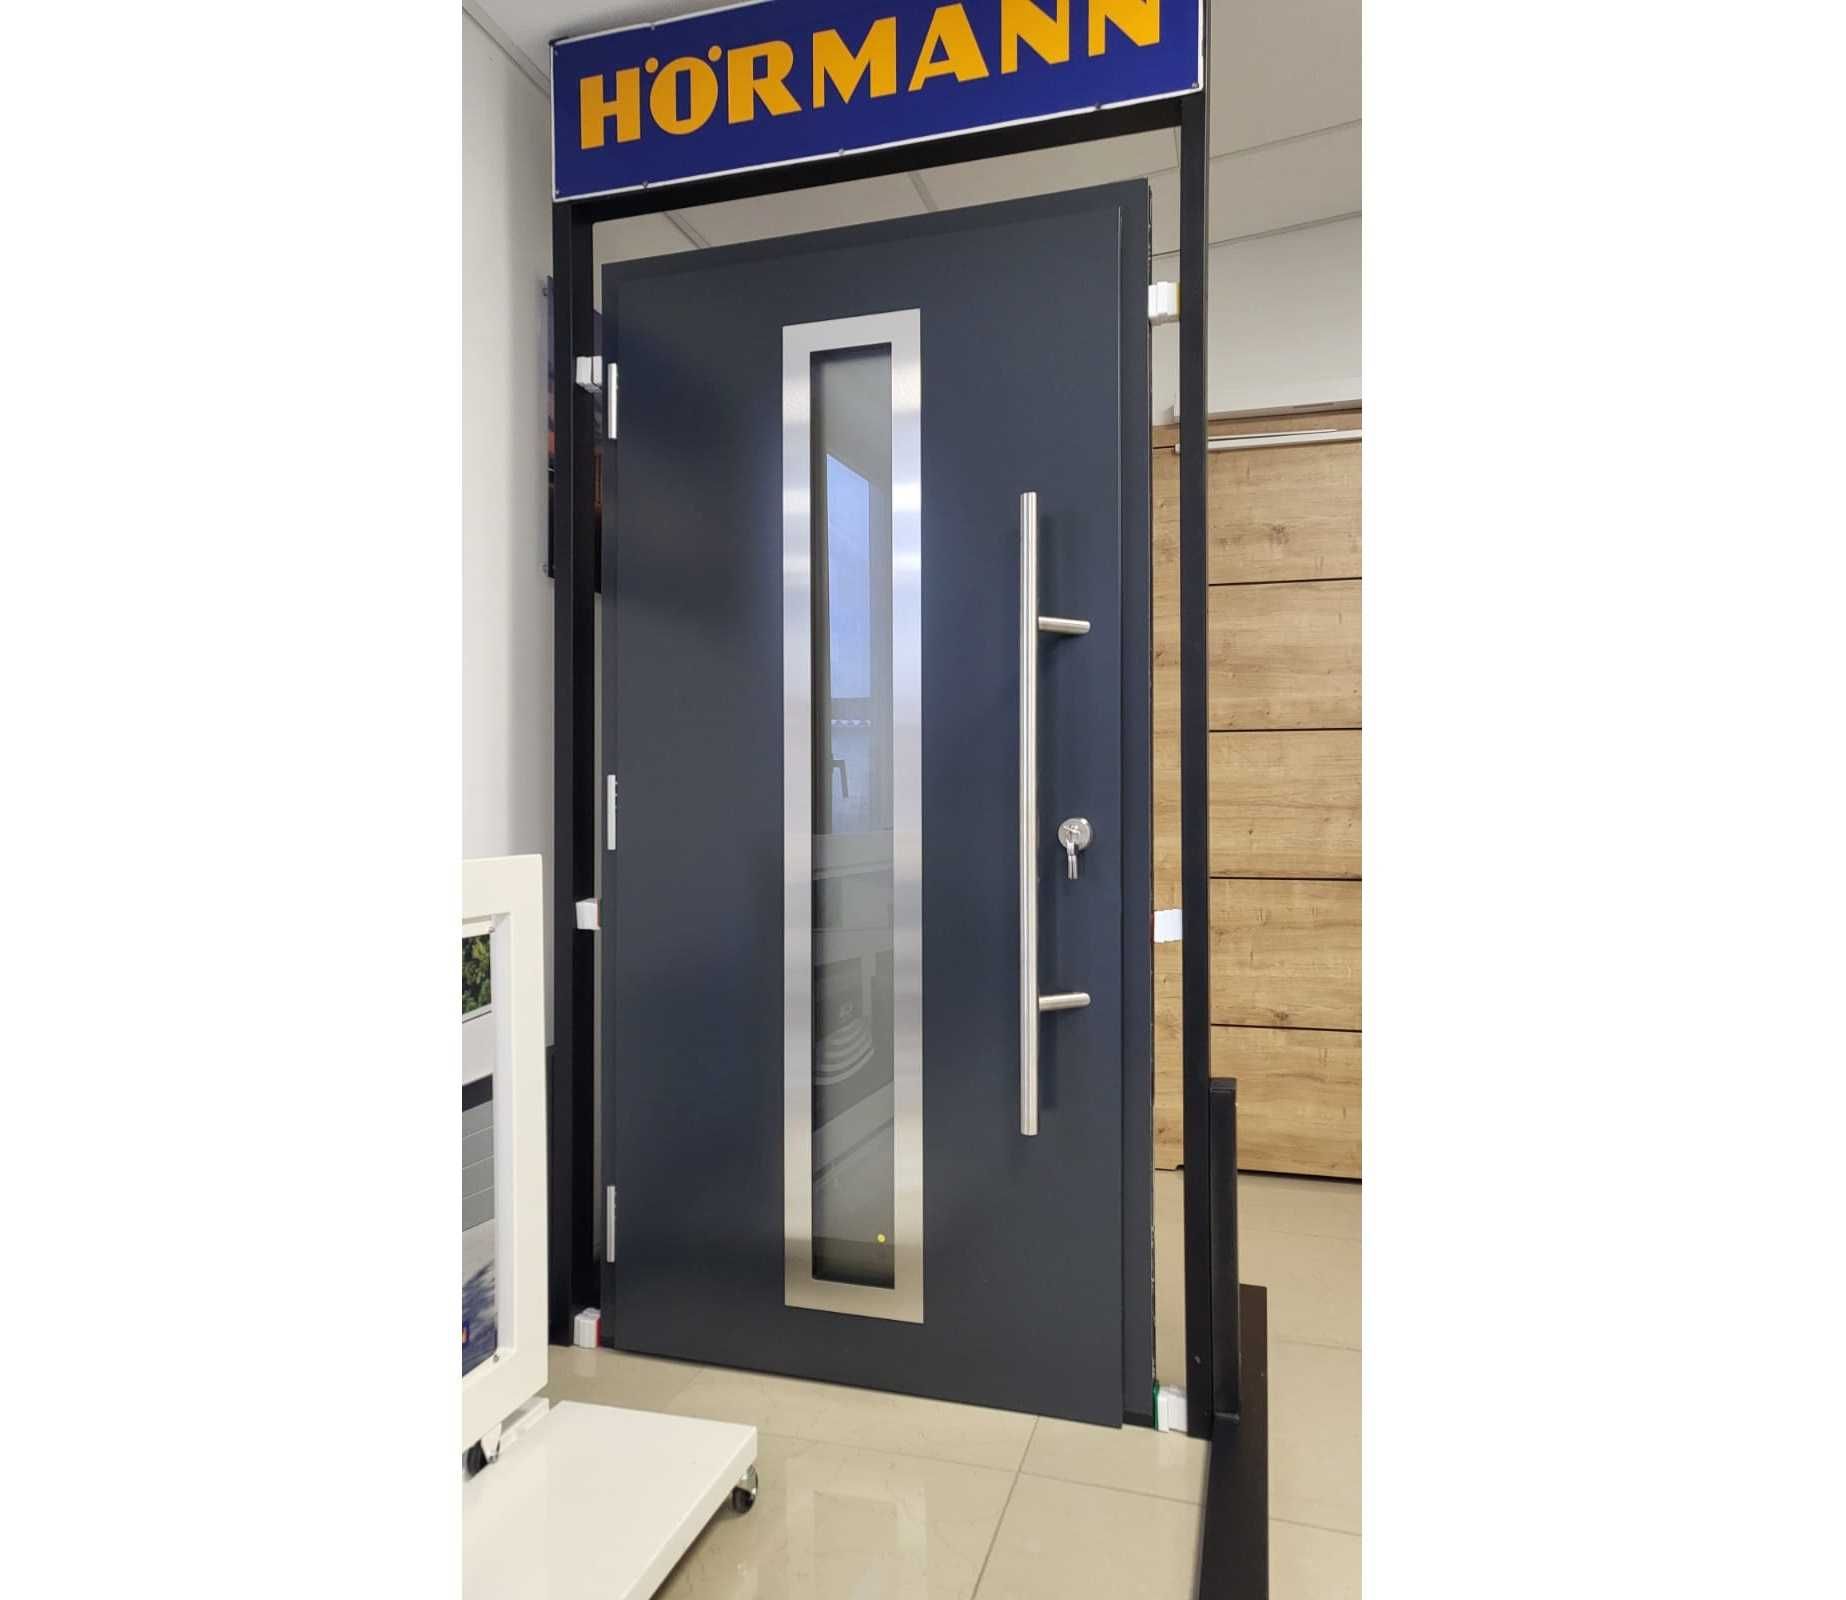 CIEPŁE Drzwi 65mm / ościeżnica Aluminiowa / Hormann /  7016 Antracyt